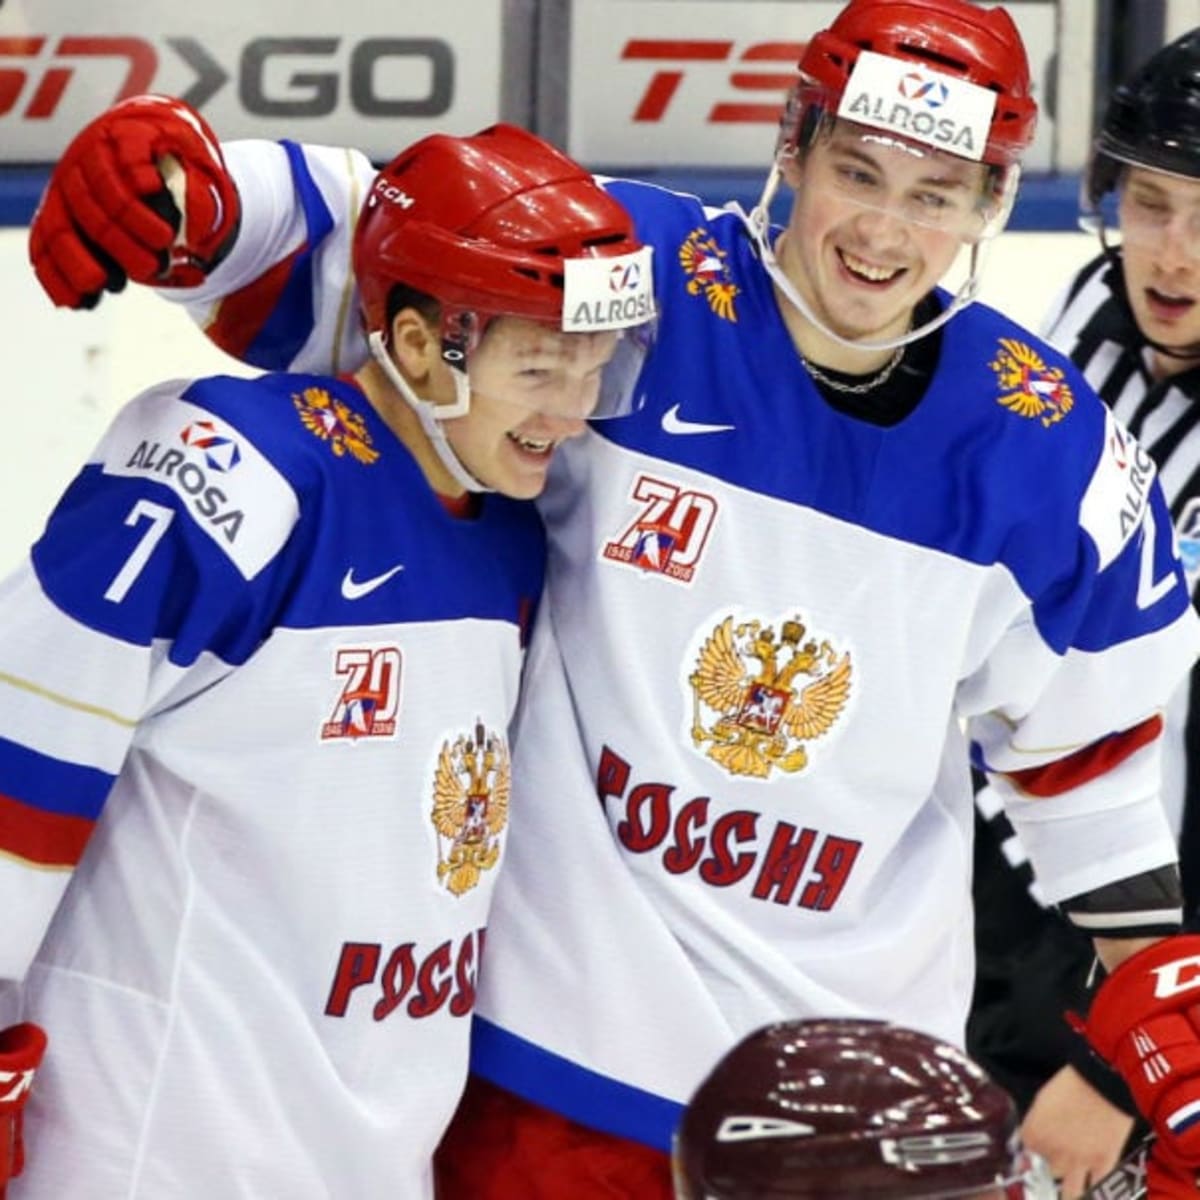 Kirill Kaprizov, Ilya Samsonov lead top 10 NHL prospects in the